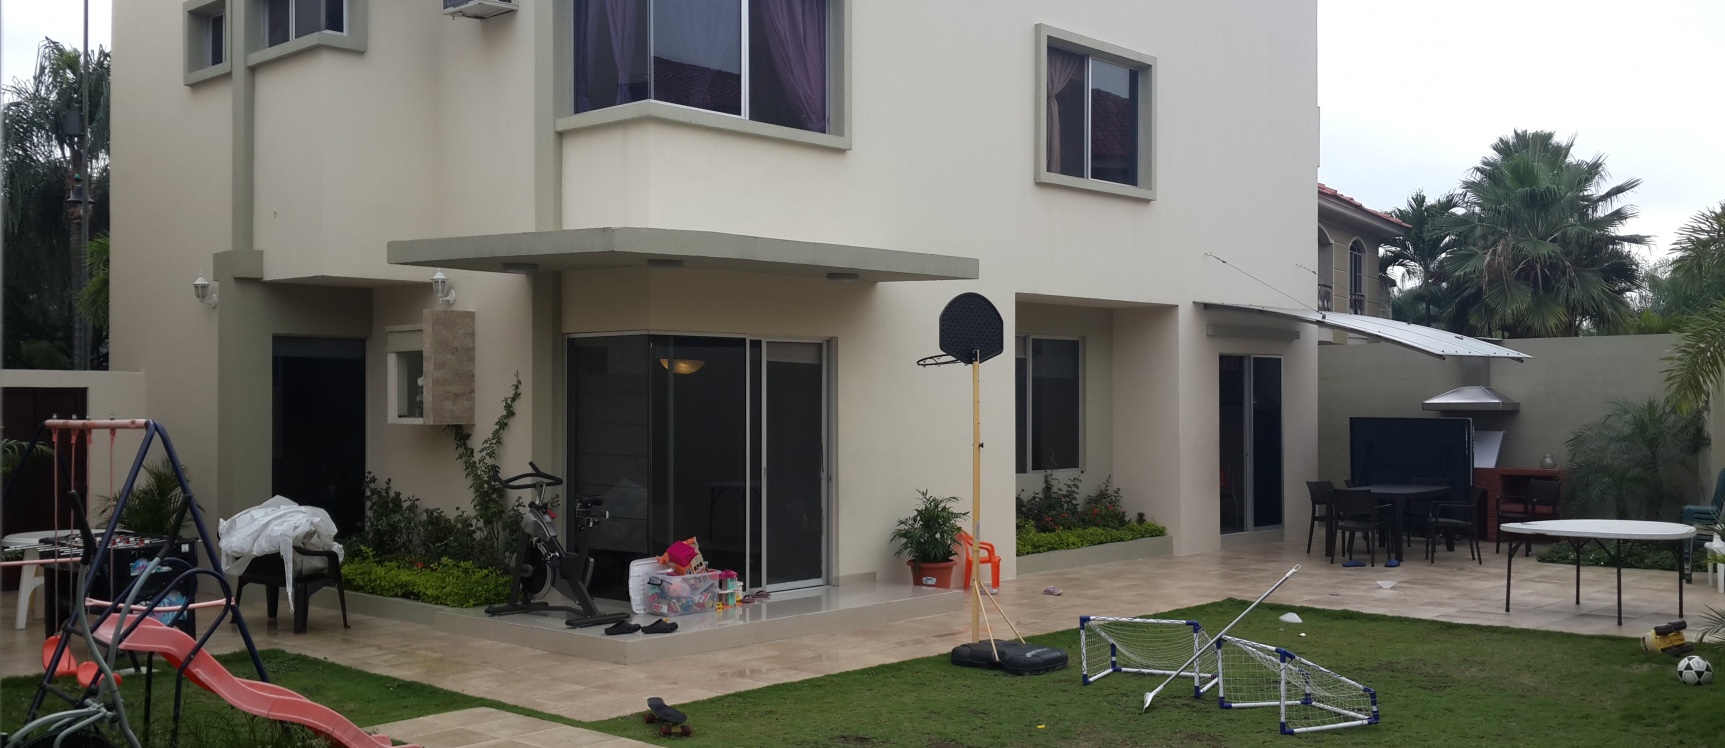 GeoBienes - Casa en venta en urbanización Vista Sol Samborondon - Plusvalia Guayaquil Casas de venta y alquiler Inmobiliaria Ecuador